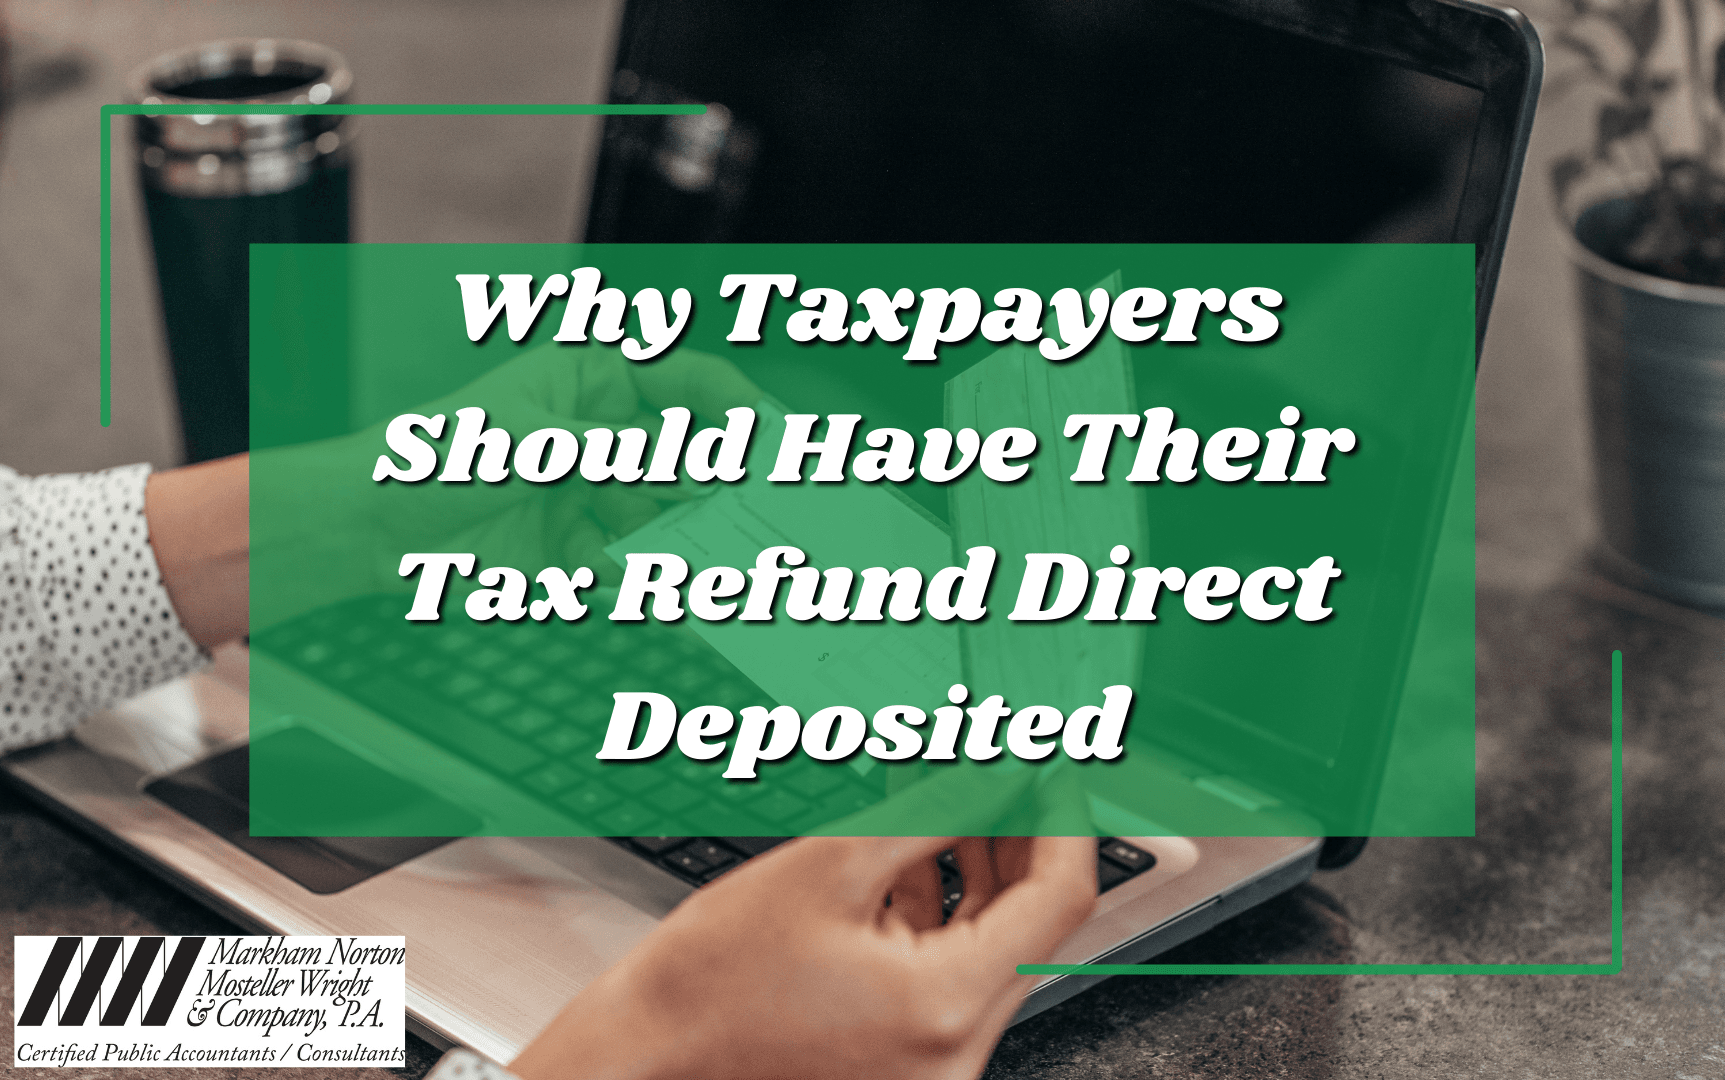 Tax refund direct deposited